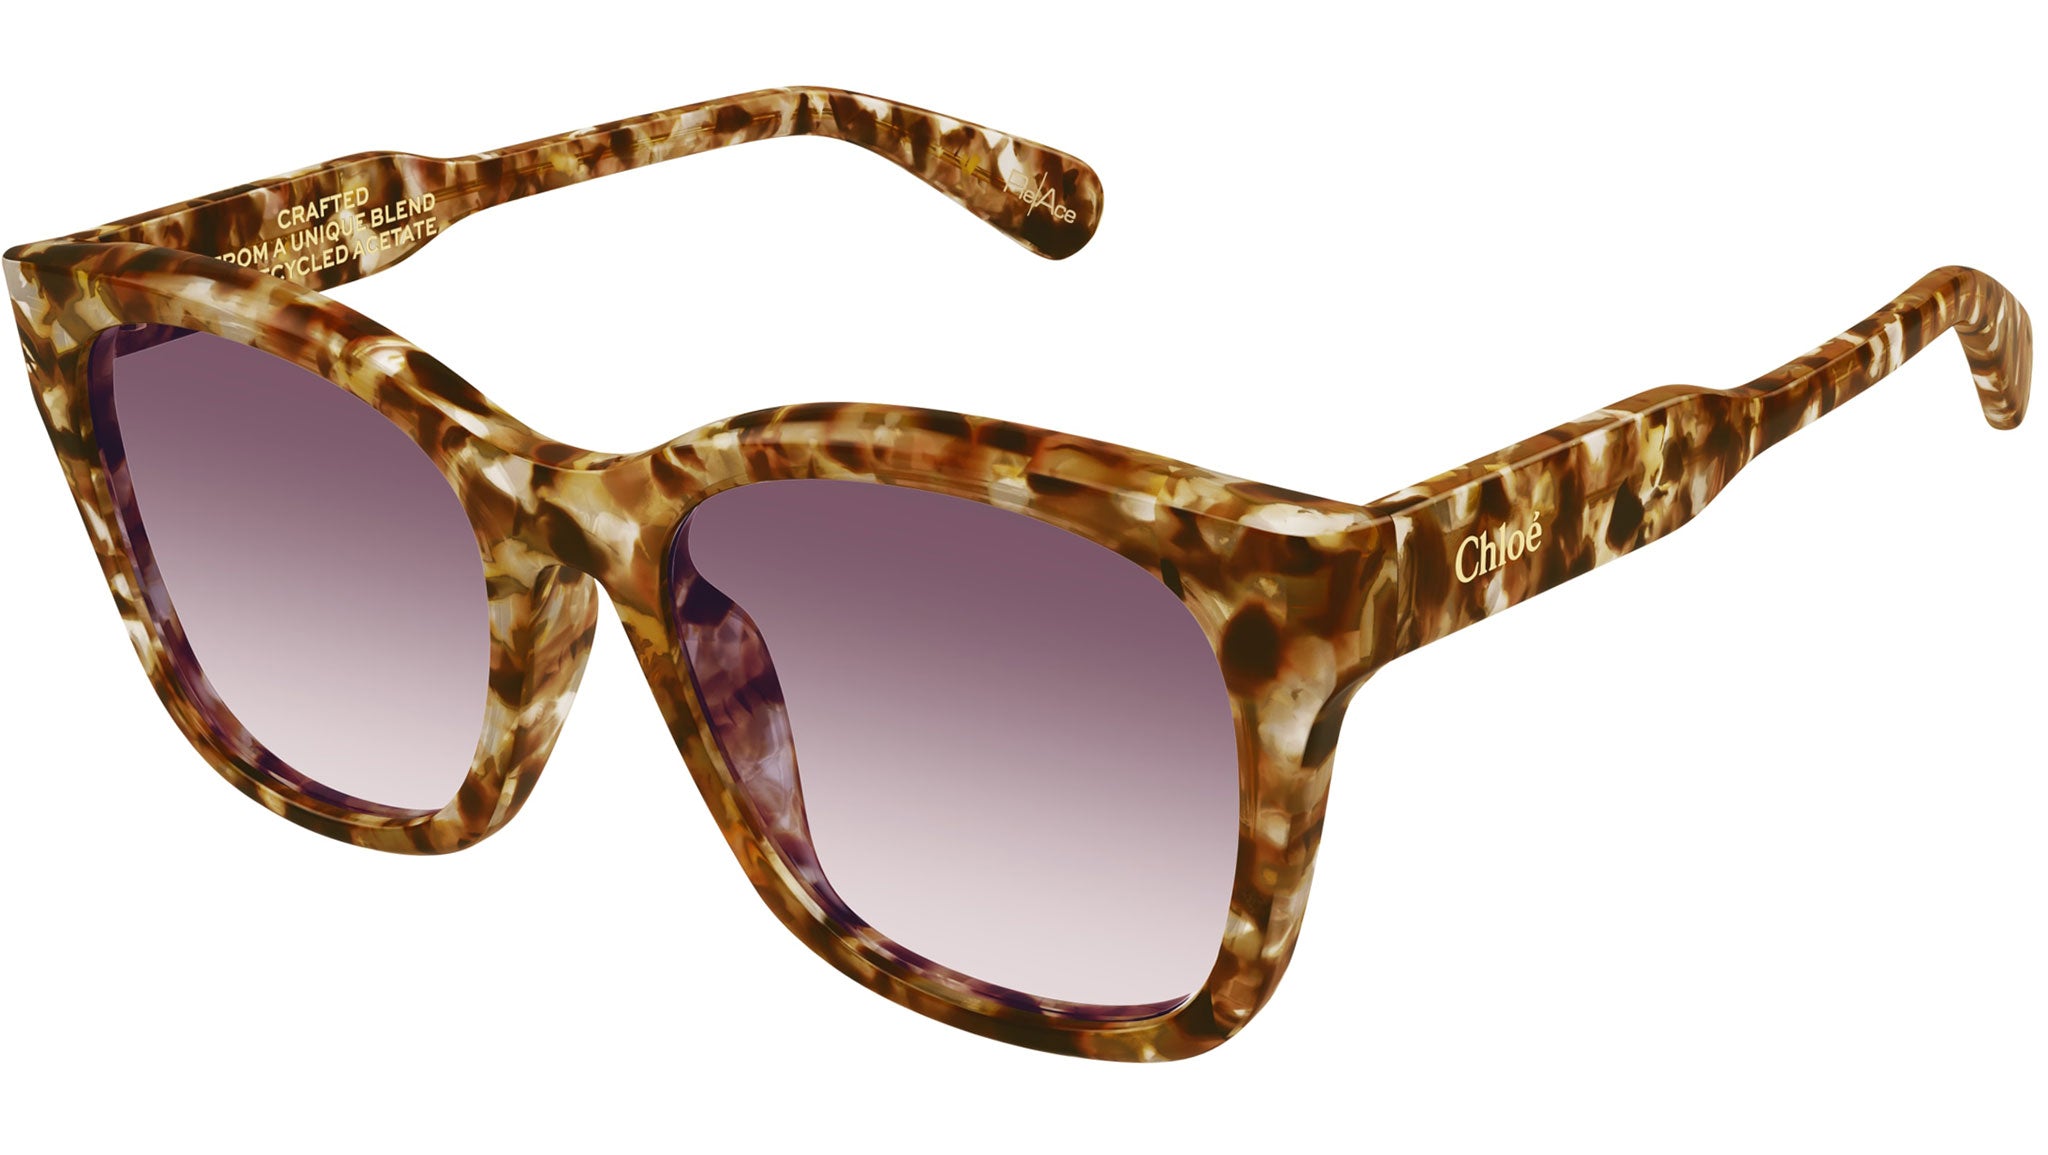 Diff Eyewear Tate Fashion Sunglasses Gold : One Size